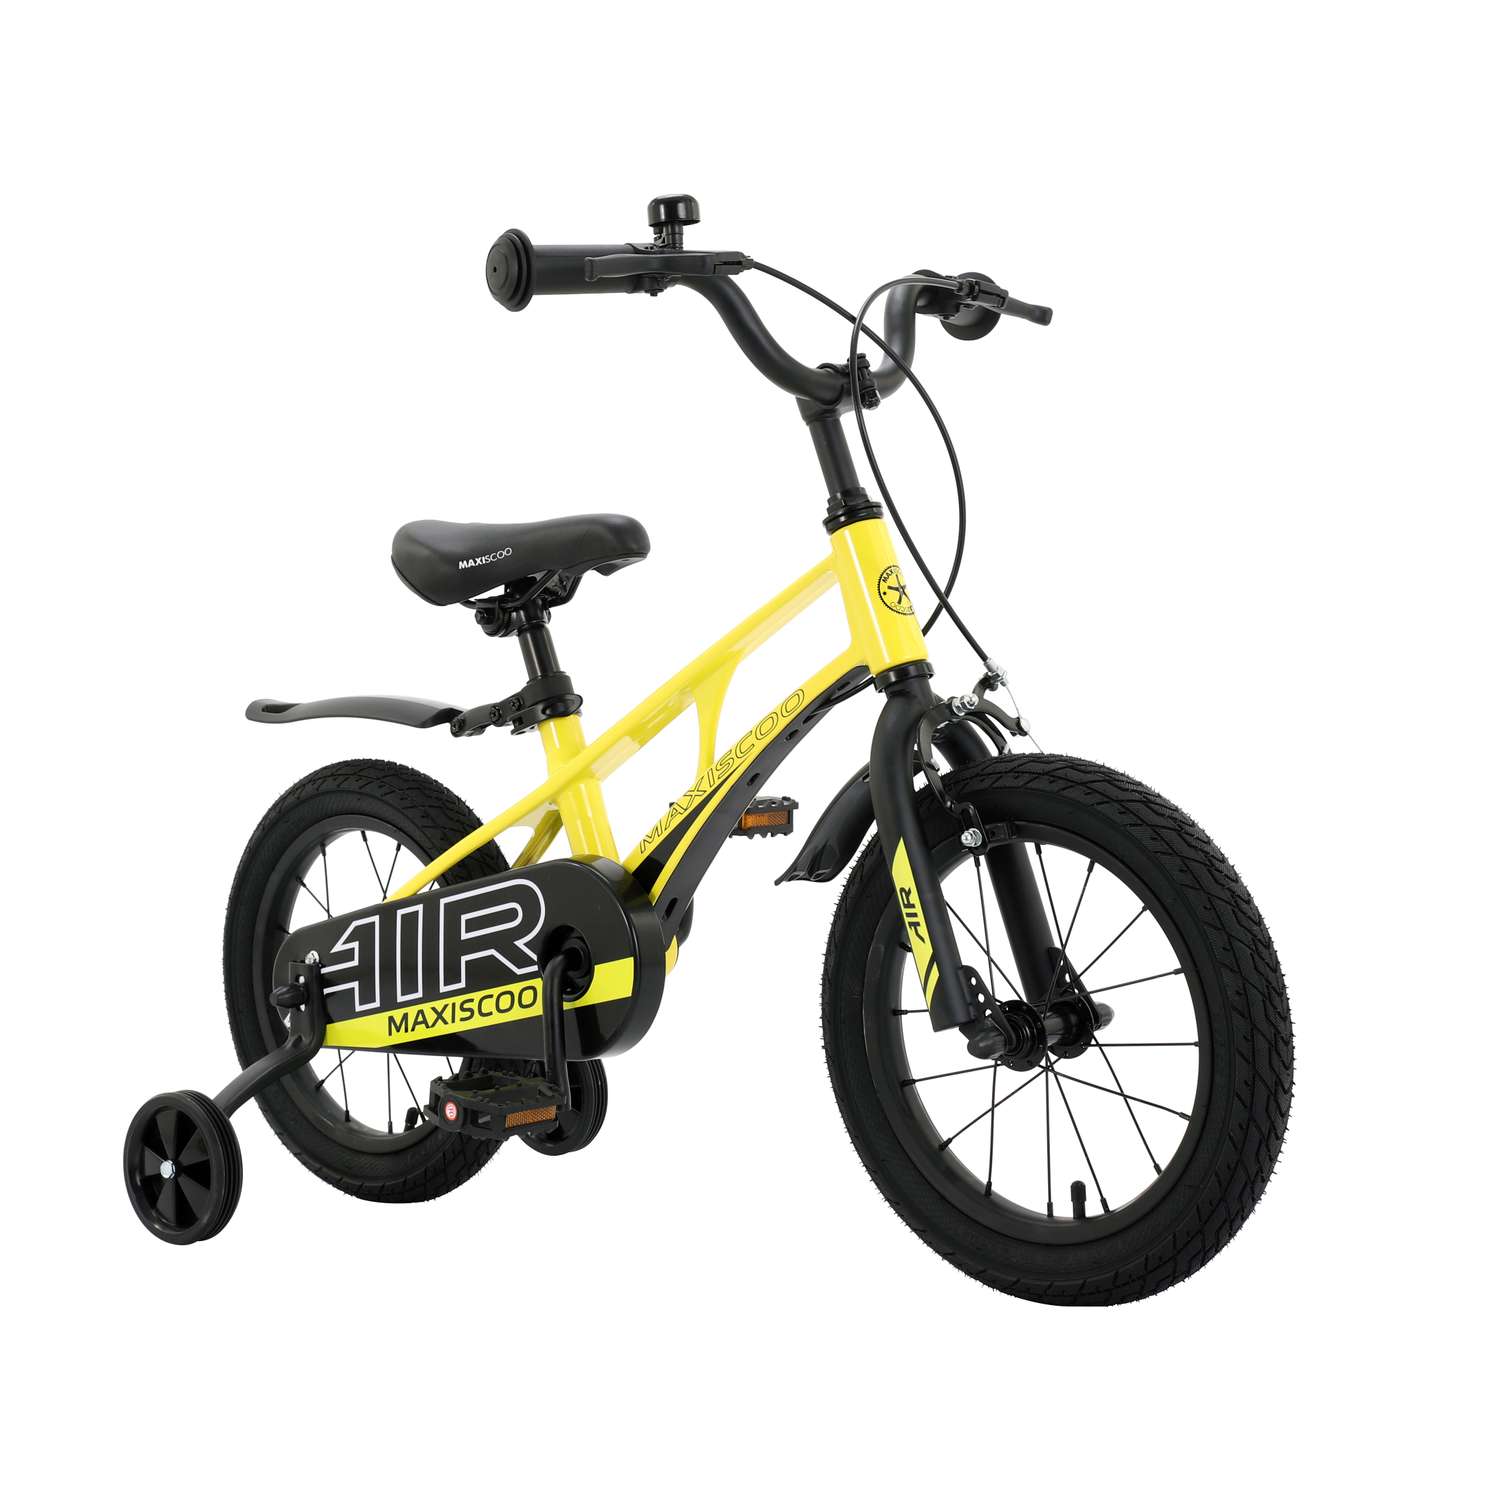 Детский двухколесный велосипед Maxiscoo Air стандарт плюс 14 желтый - фото 2